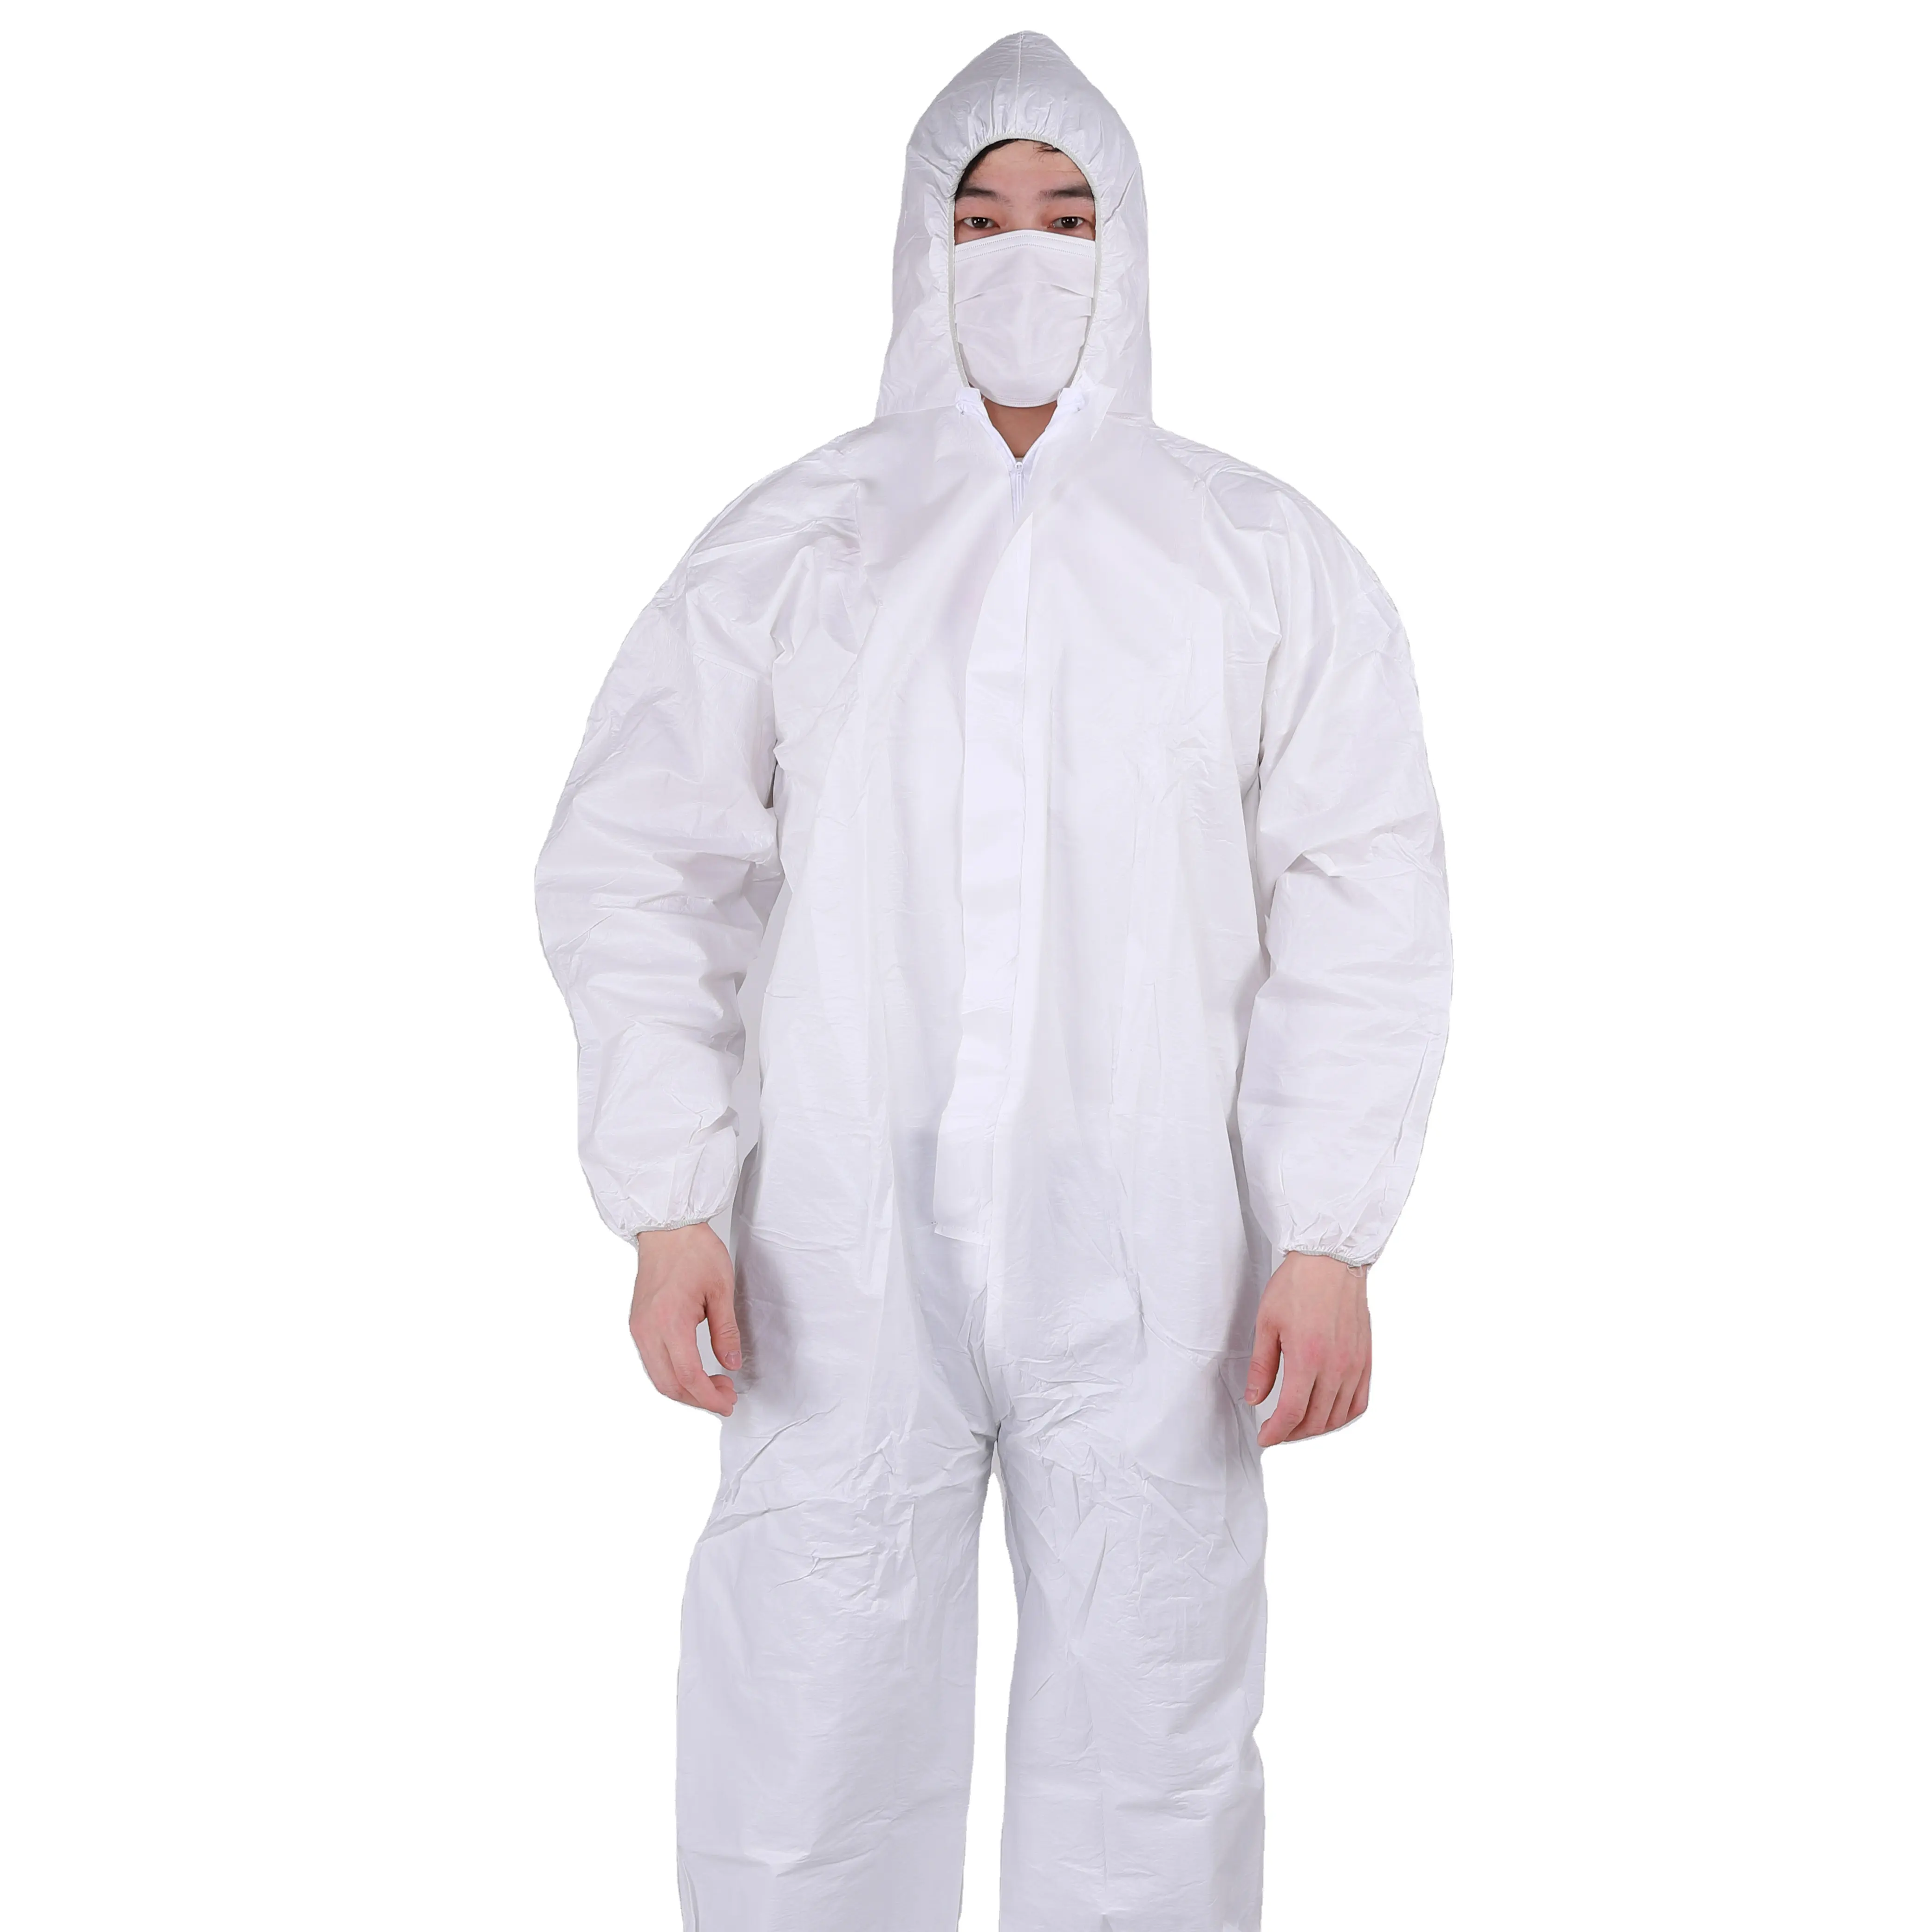 प्रकार में 5/6 एस एफ डिस्पोजेबल Microporous coverall सुरक्षा वस्त्र डिस्पोजेबल coverall के लिए चौग़ा पुरुषों पीपीई सूट सुरक्षा कपड़े